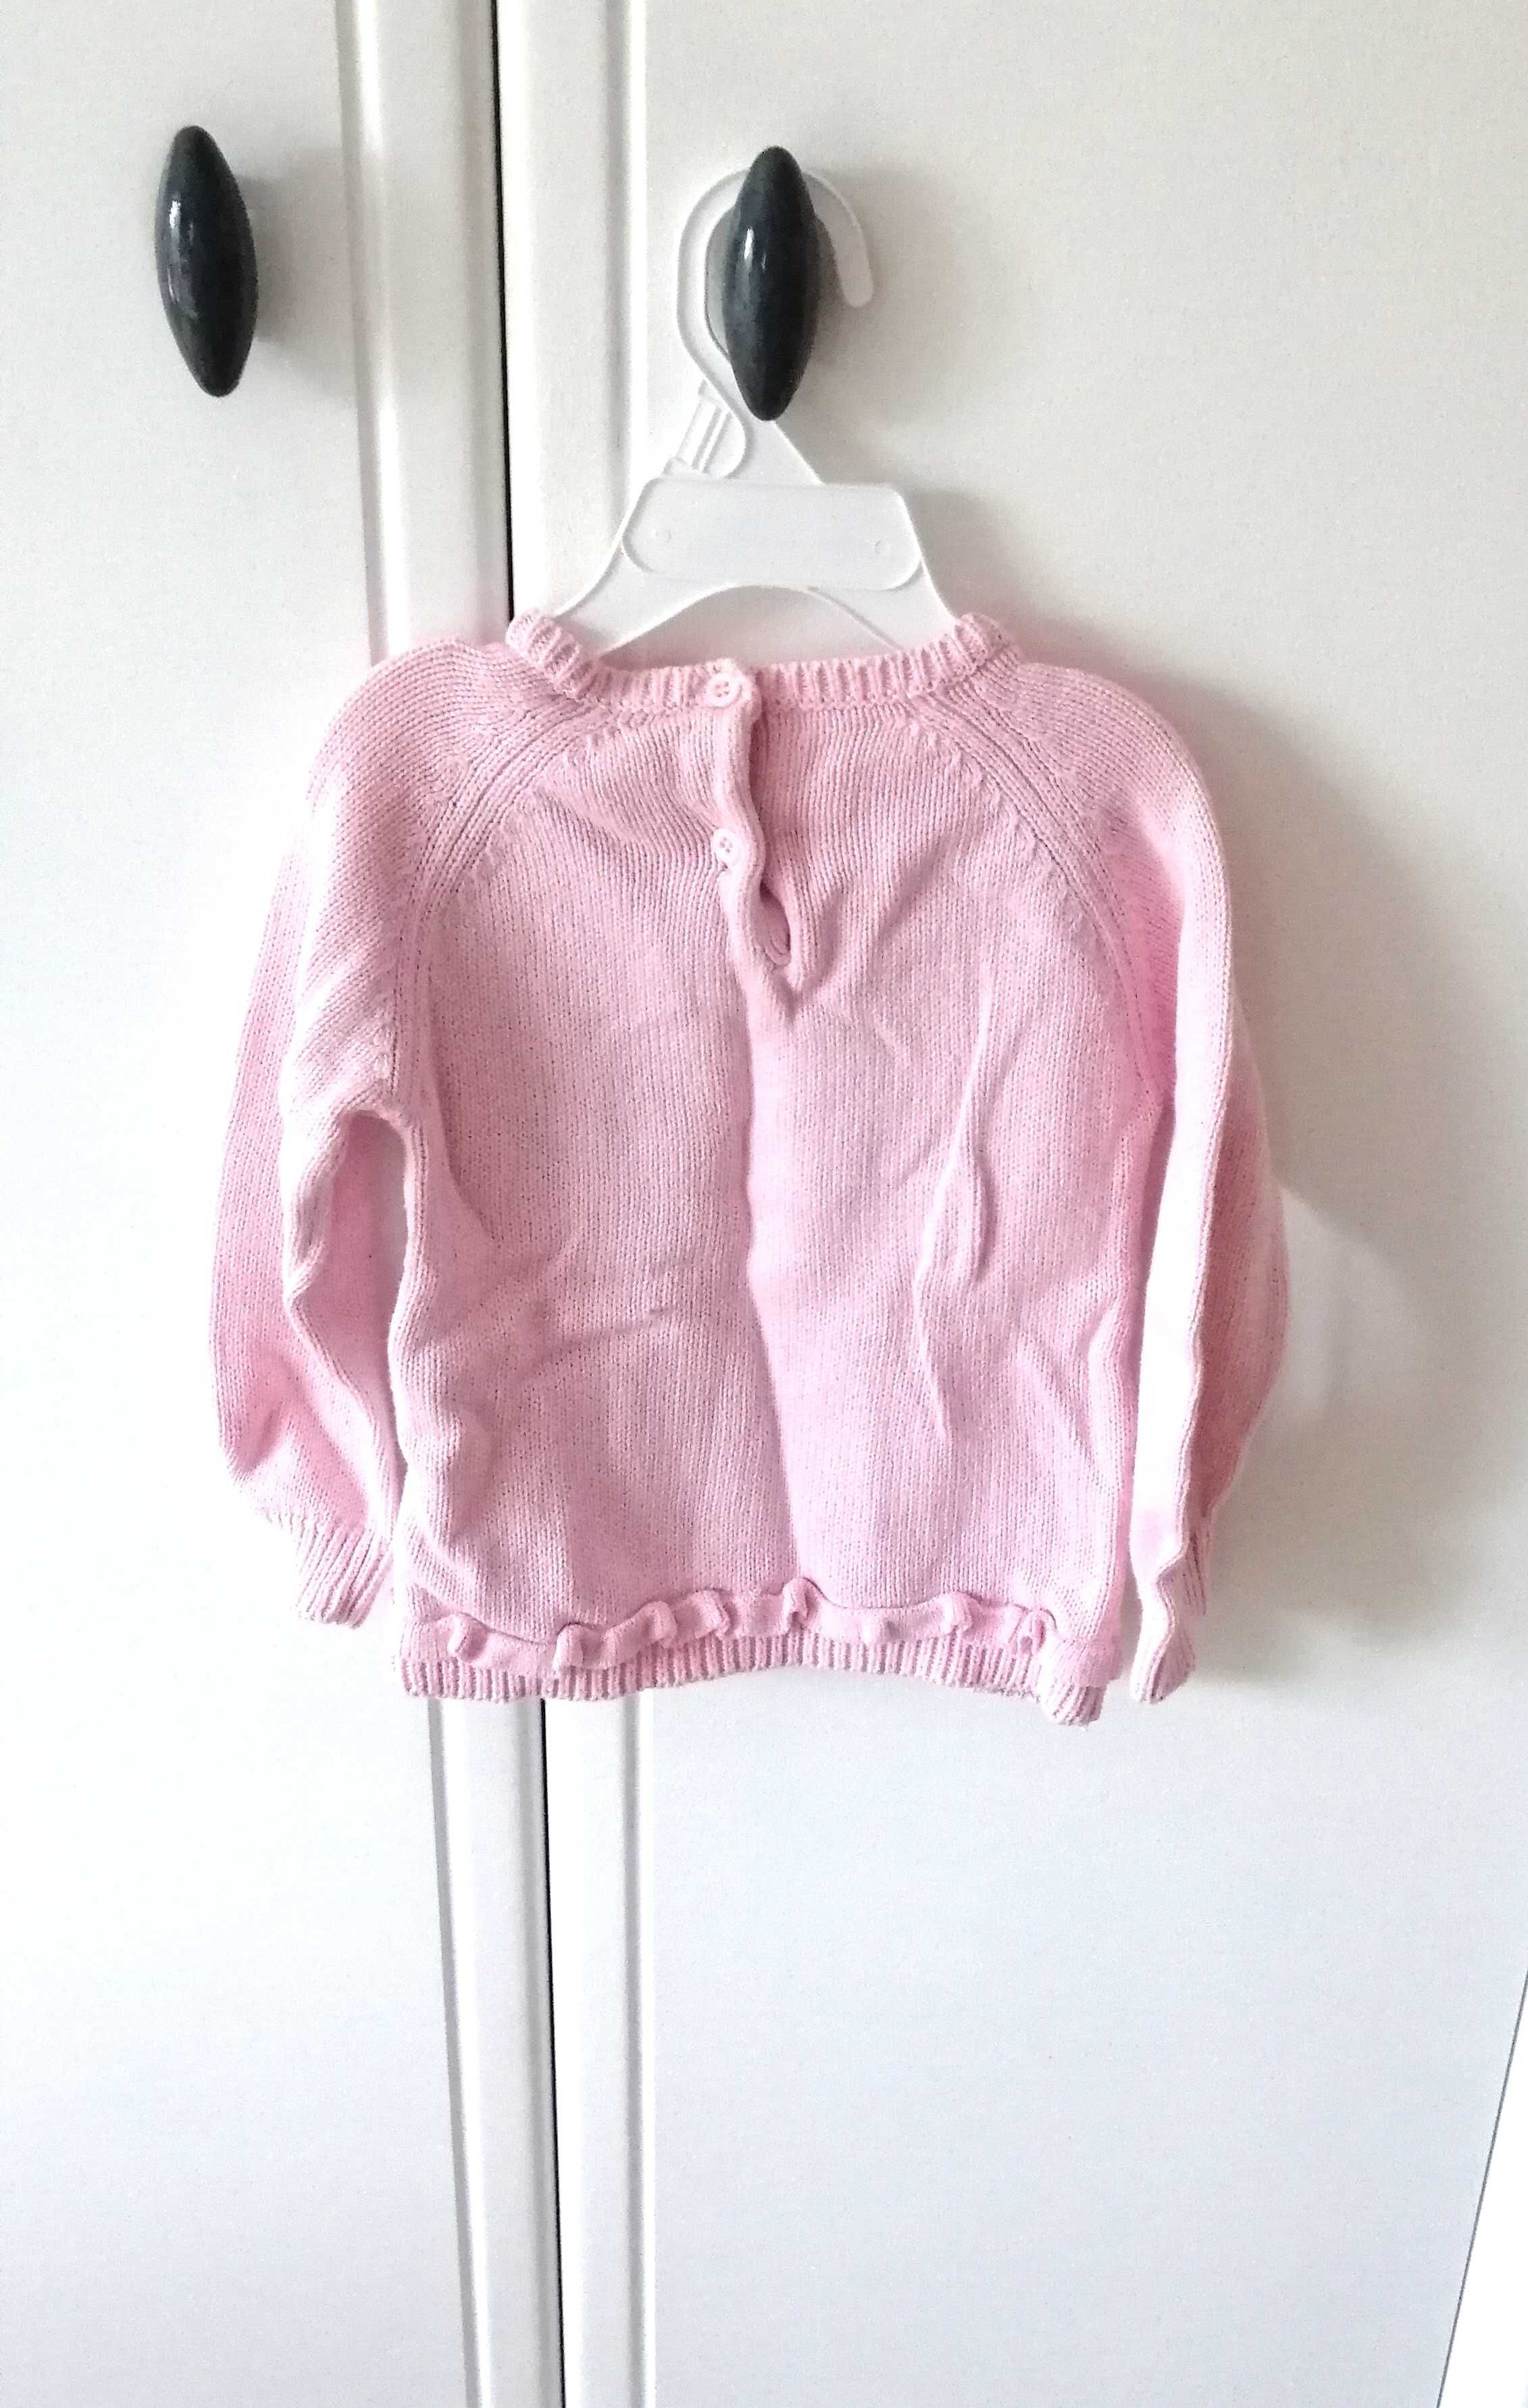 jasnoróżowy sweterek sarenka z misiem dla dziewczynki 80cm 9-12mies